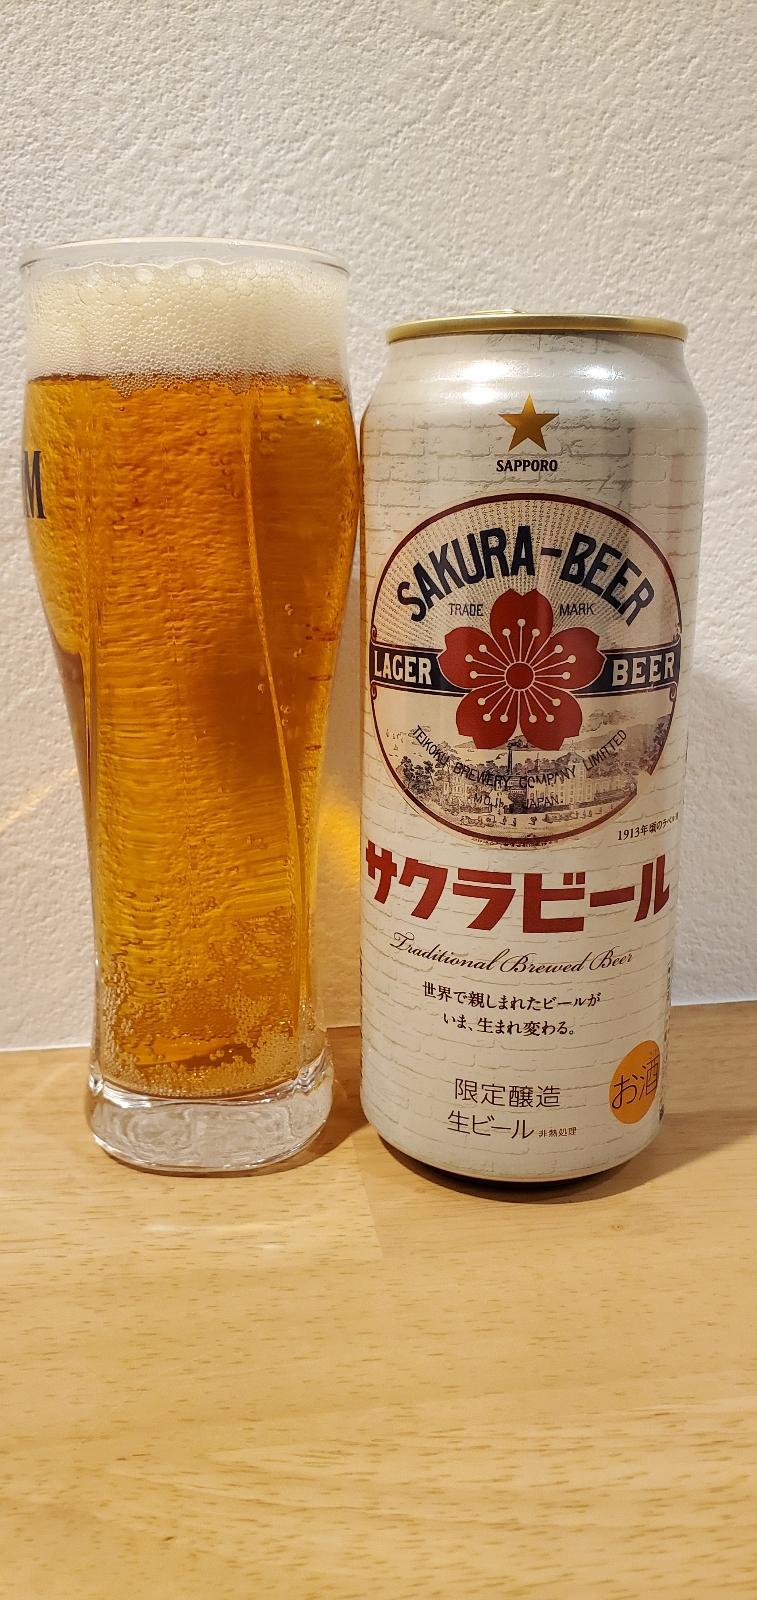 Sapporo Sakura Beer